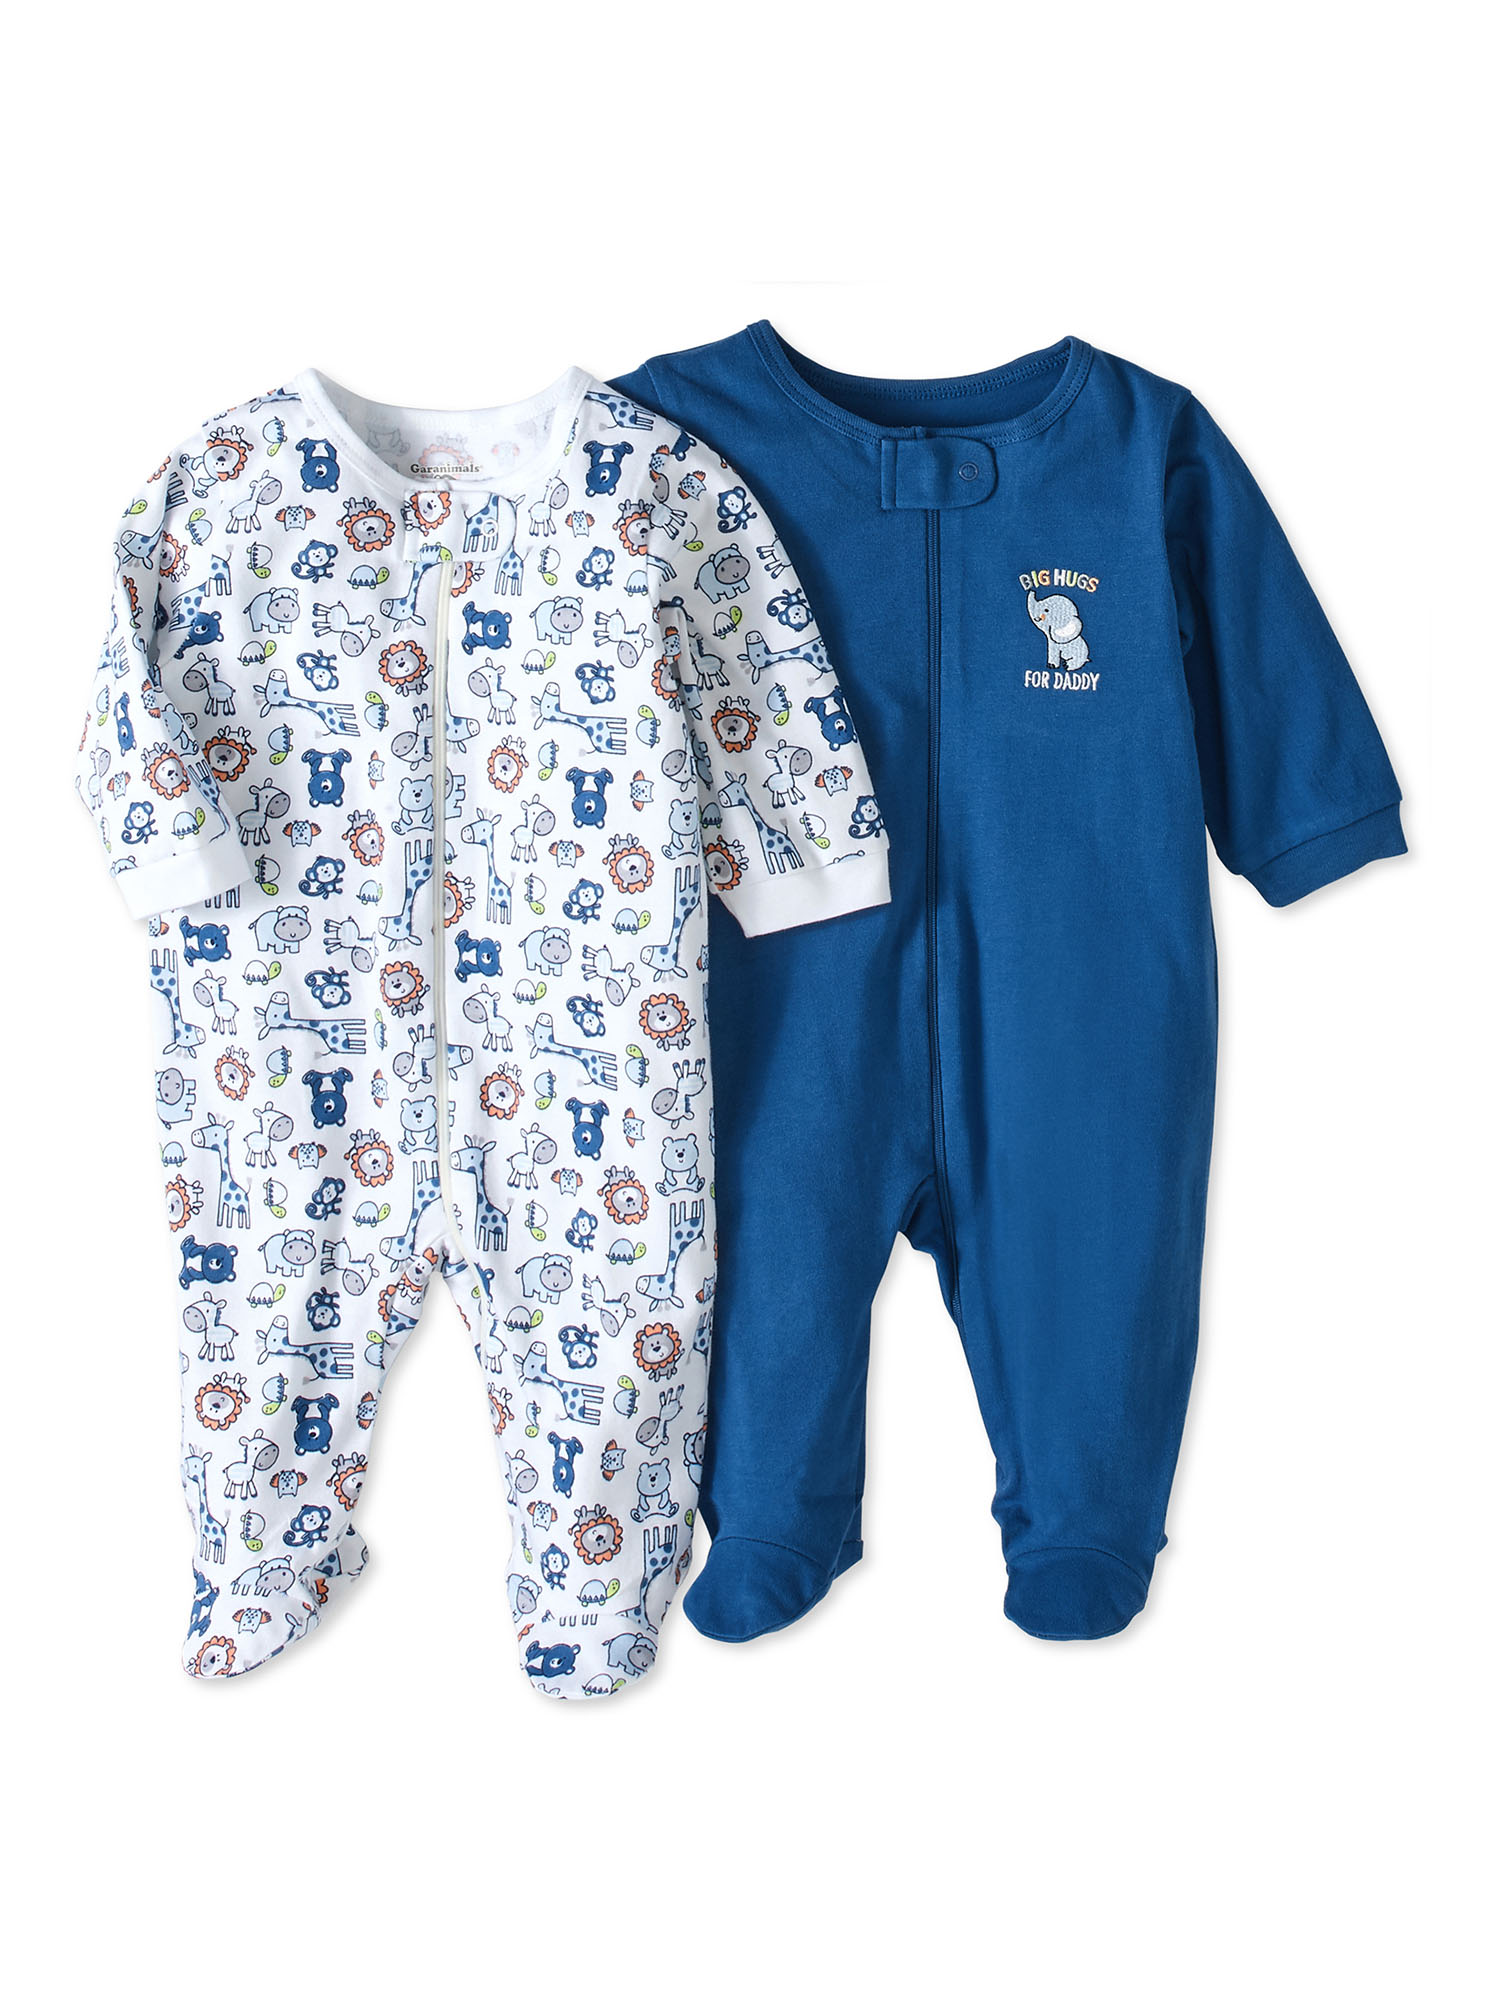 Garanimals Newborn Baby Boy Shower Gift Set, 20-Piece, Preemie-6/9 Months - image 2 of 7